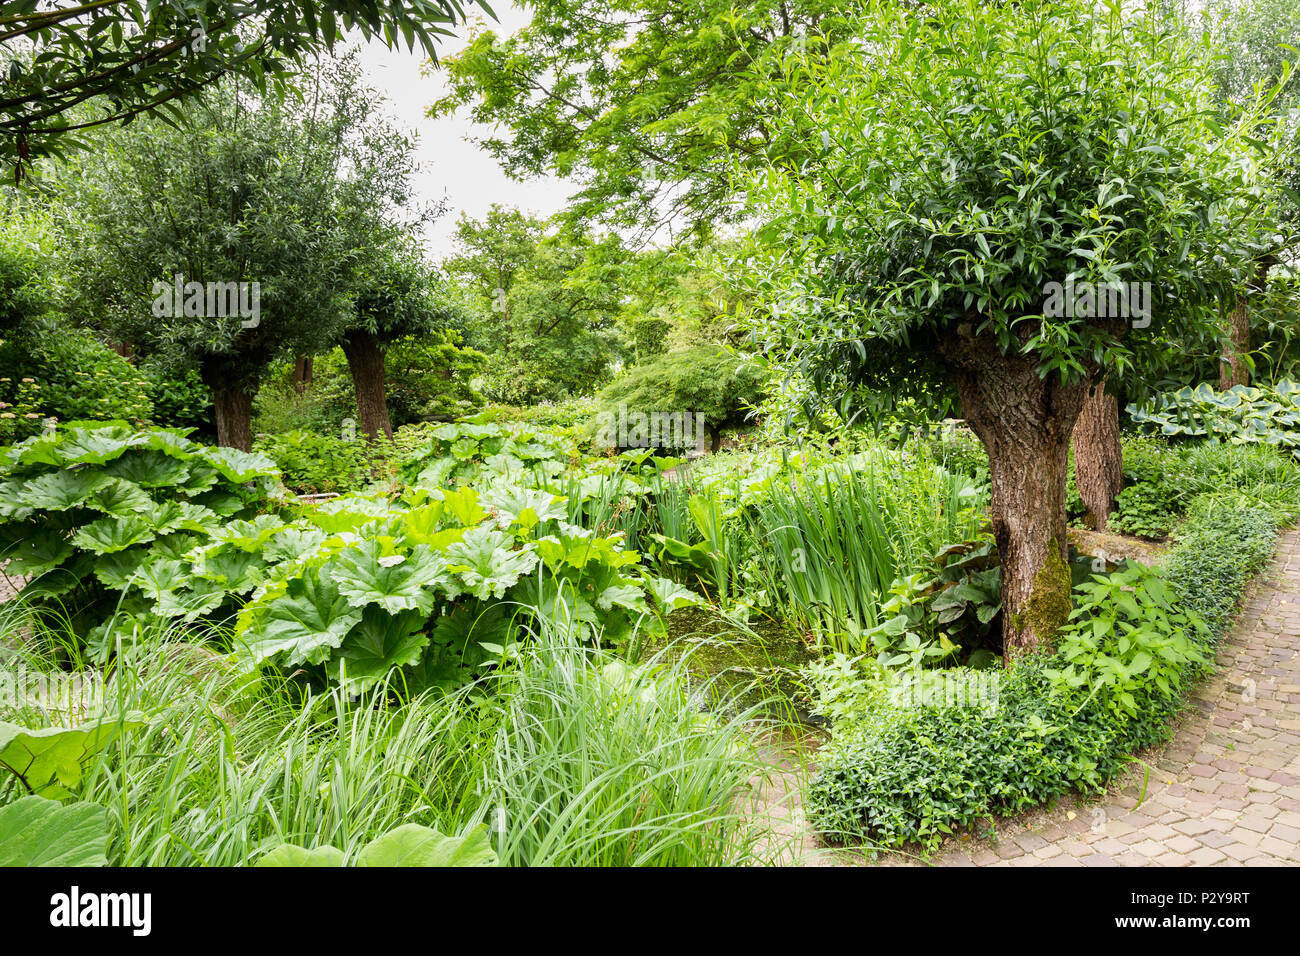 Green garden with bun willows Stock Photo